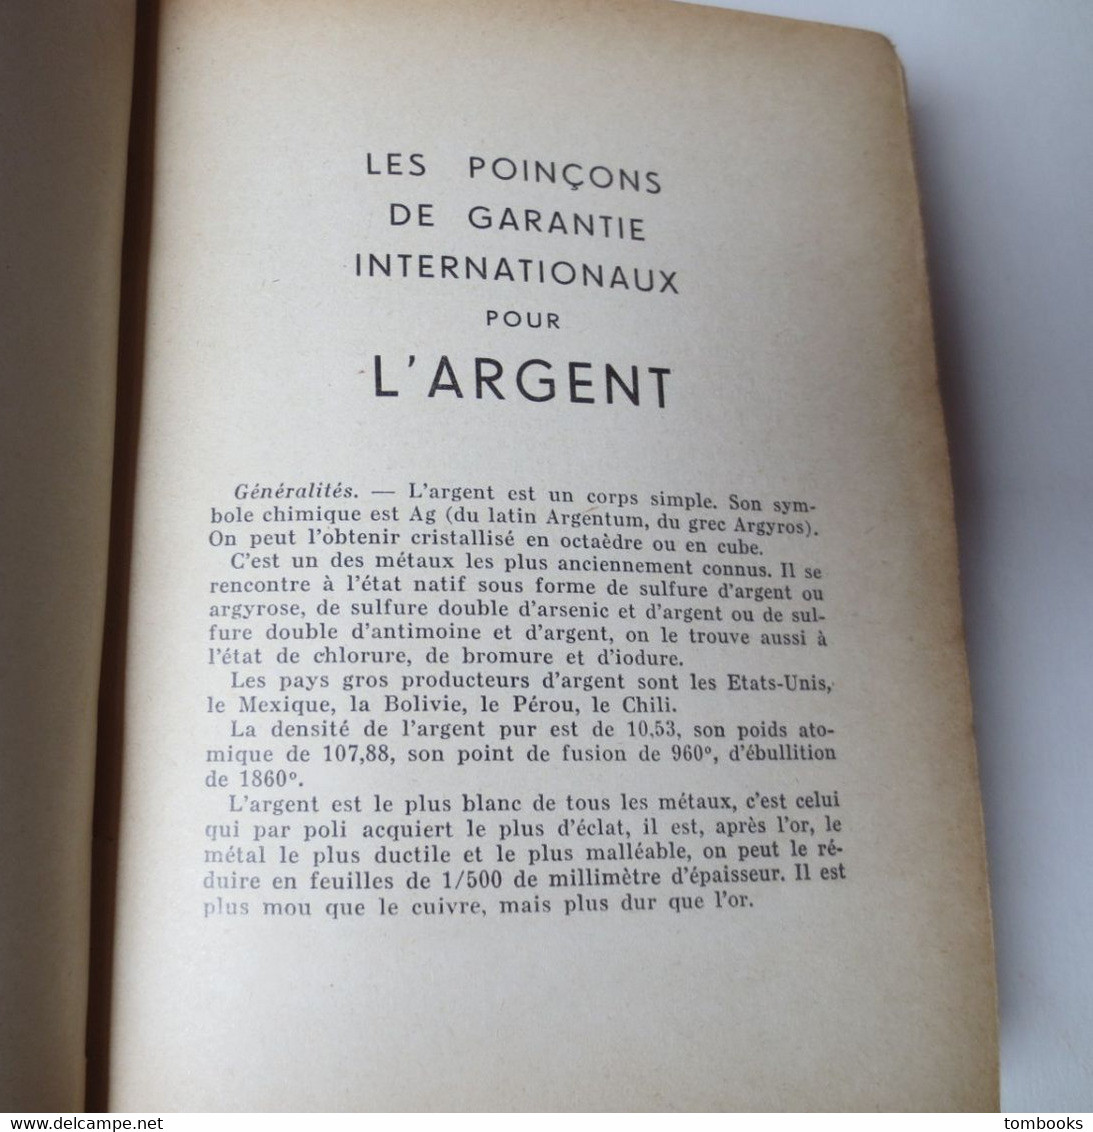 Les Poinçons De Garantie Internationaux Pour L'Argent Réunis Par Tardy - 4 Eme édition - 1951 - TBE - - Other & Unclassified